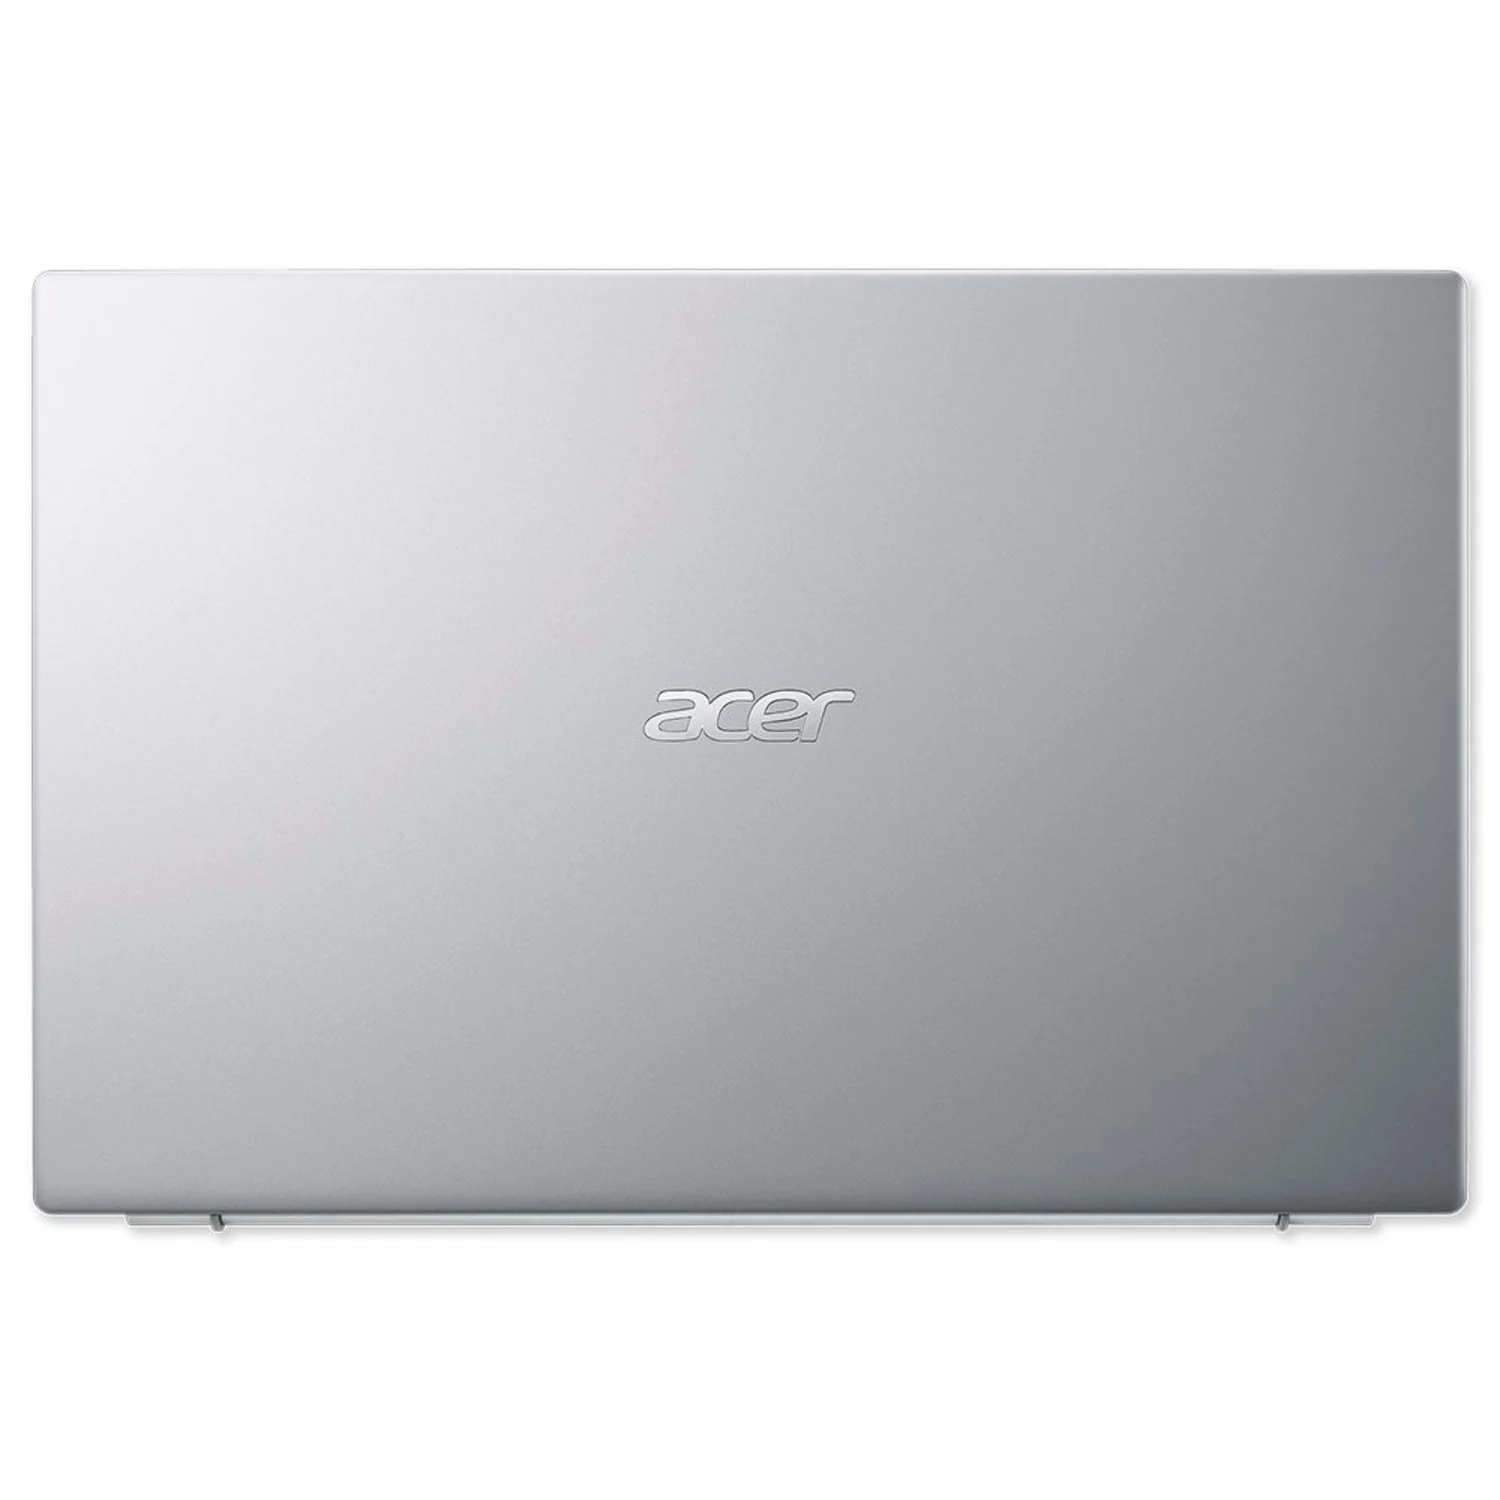 Notebook Acer Aspire 1 A115-32-C28P 15.6¨ Intel Celeron N4500 128GB SSD 4GB RAM EMMC - Prata